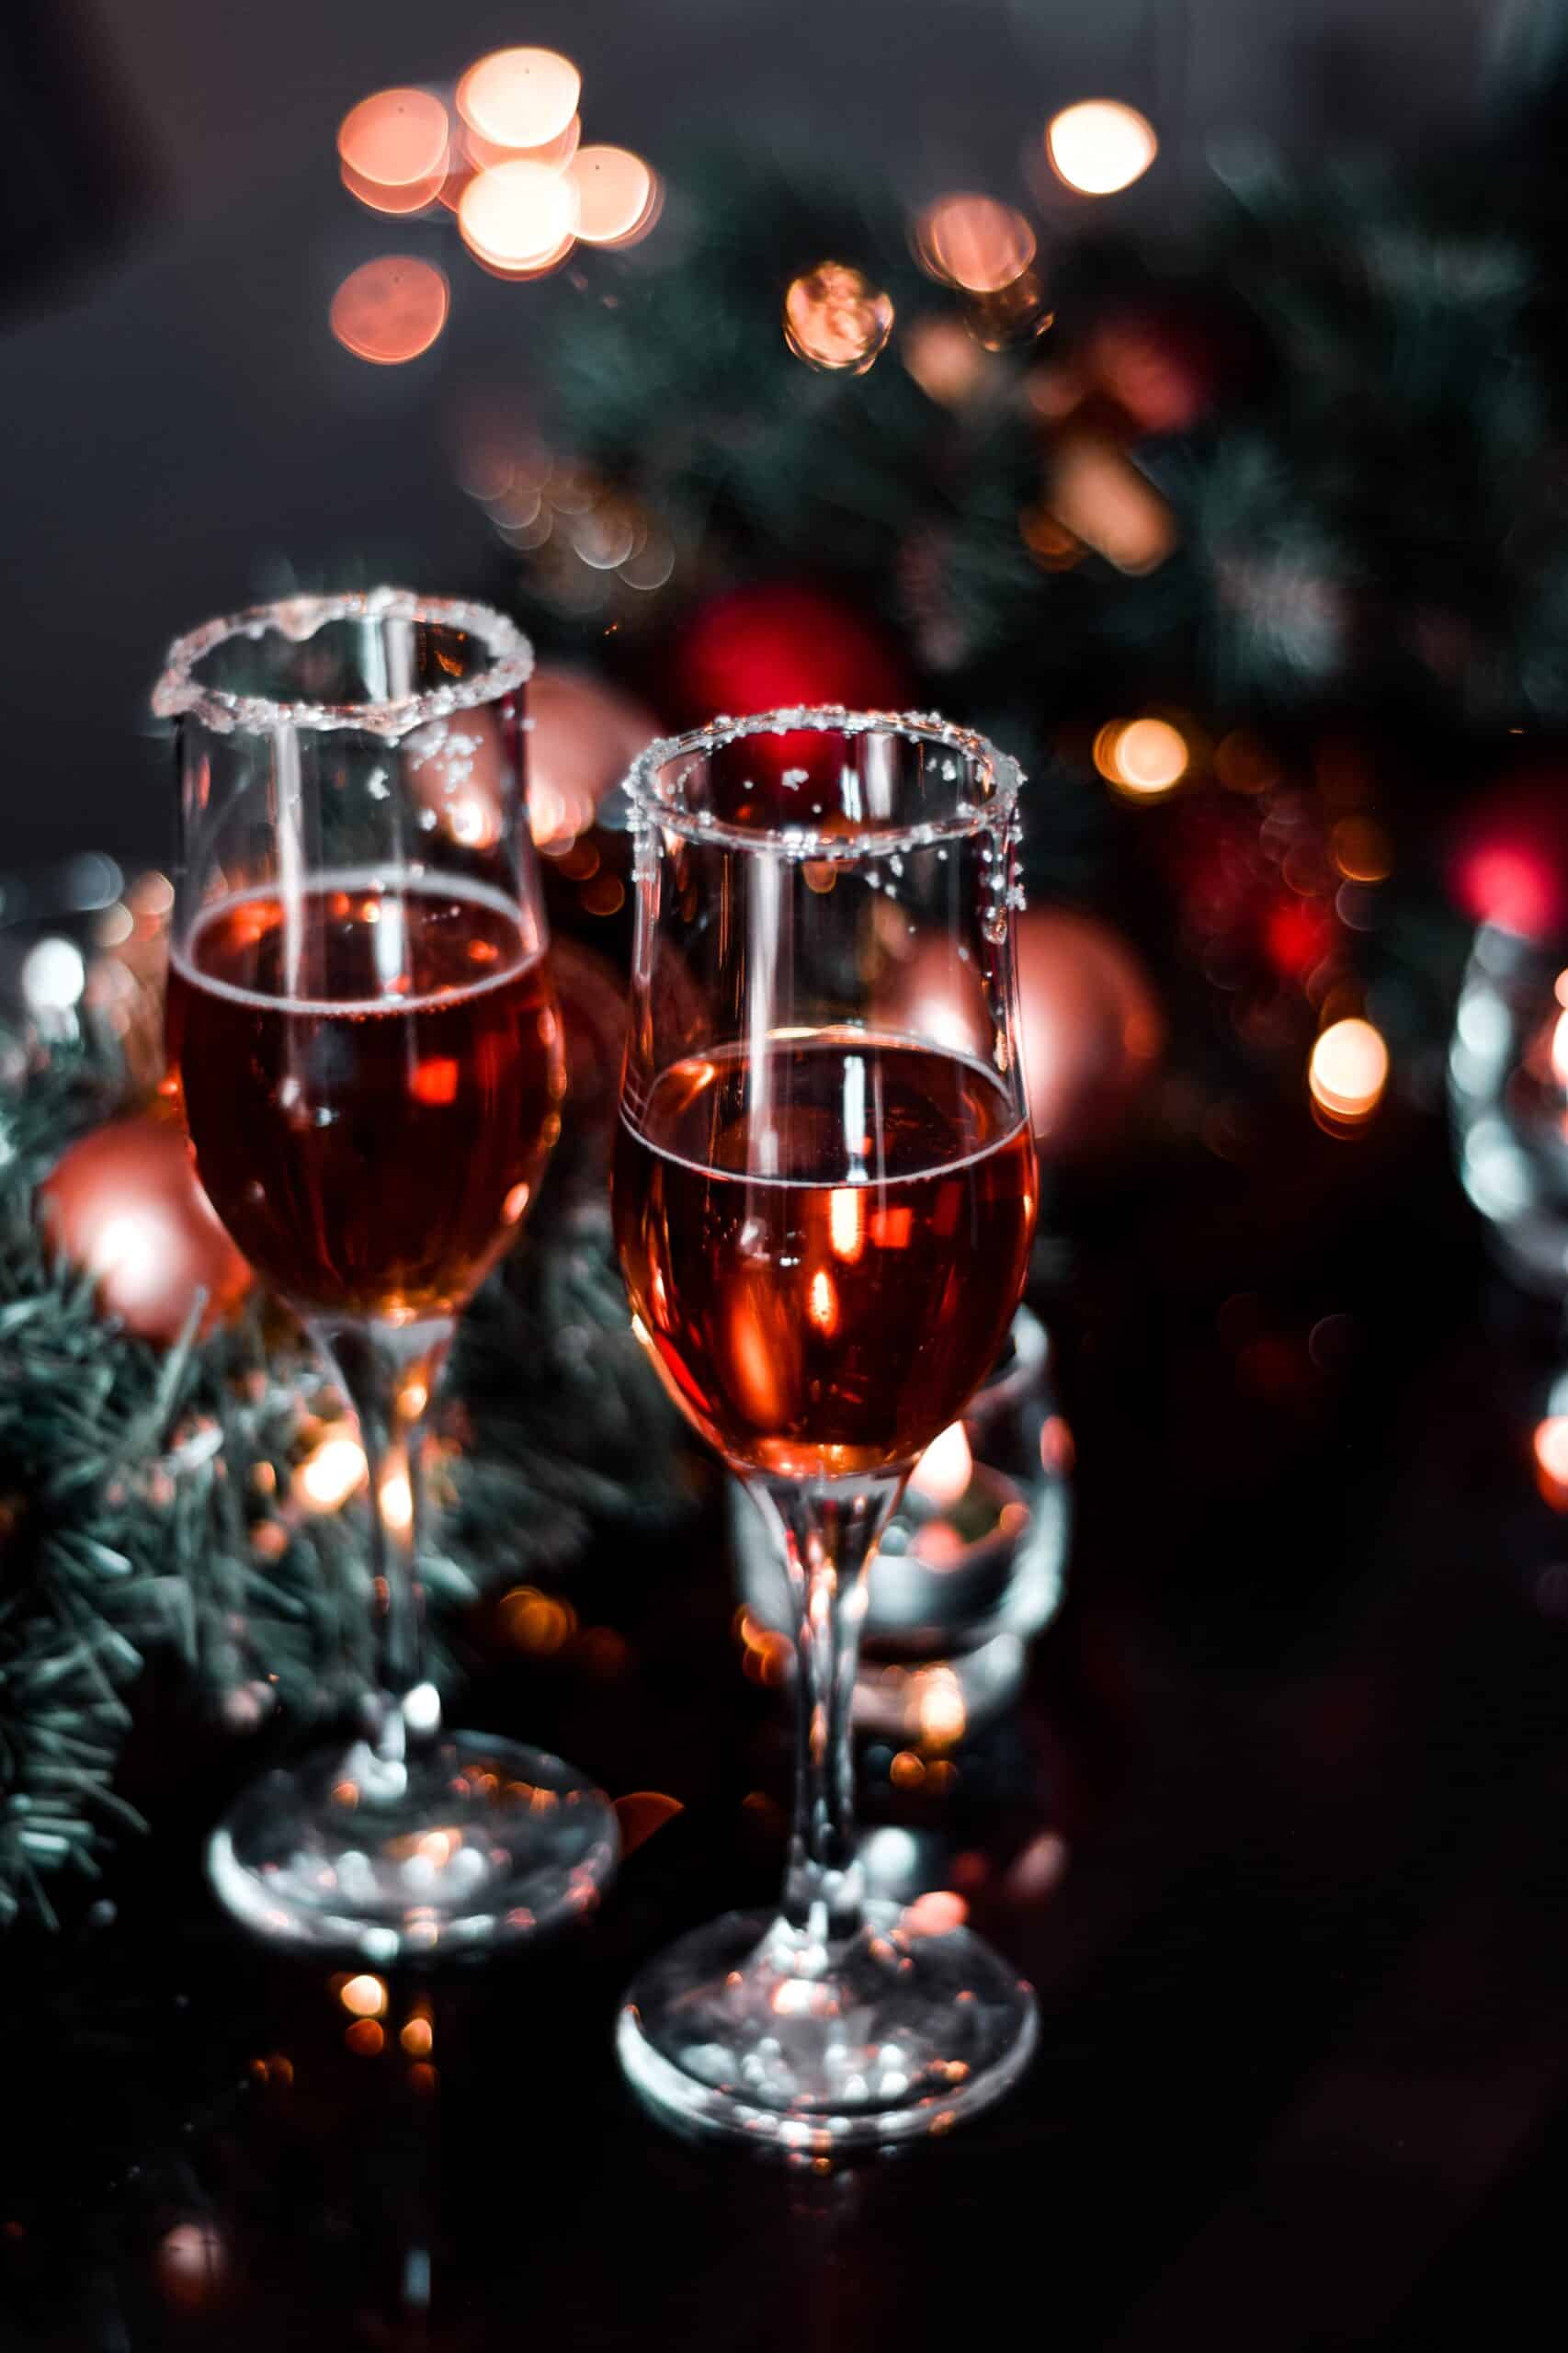 Celebra la Navidad con estos vinos y cervezas bajacalifornianos